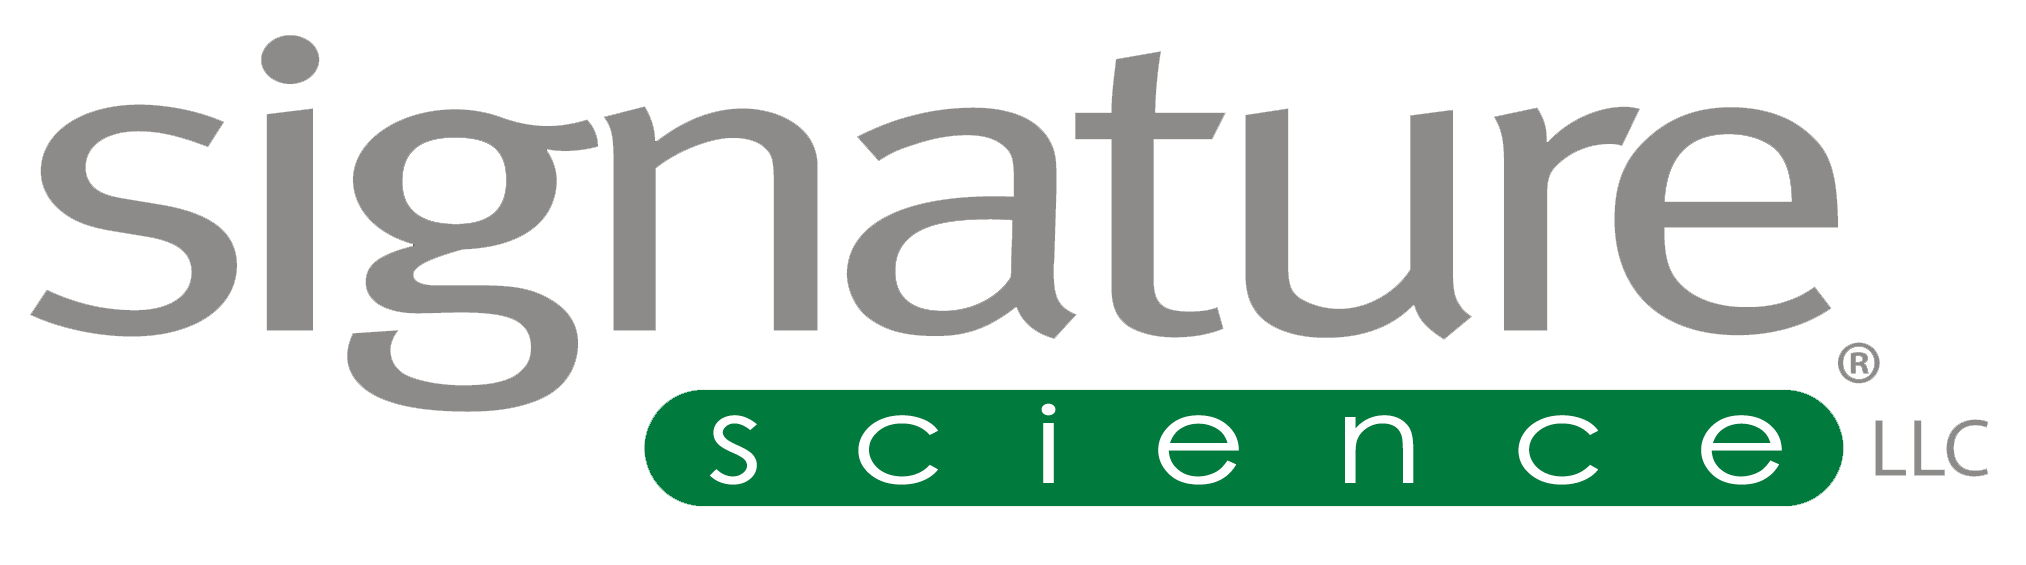 Signature Science LLC logo